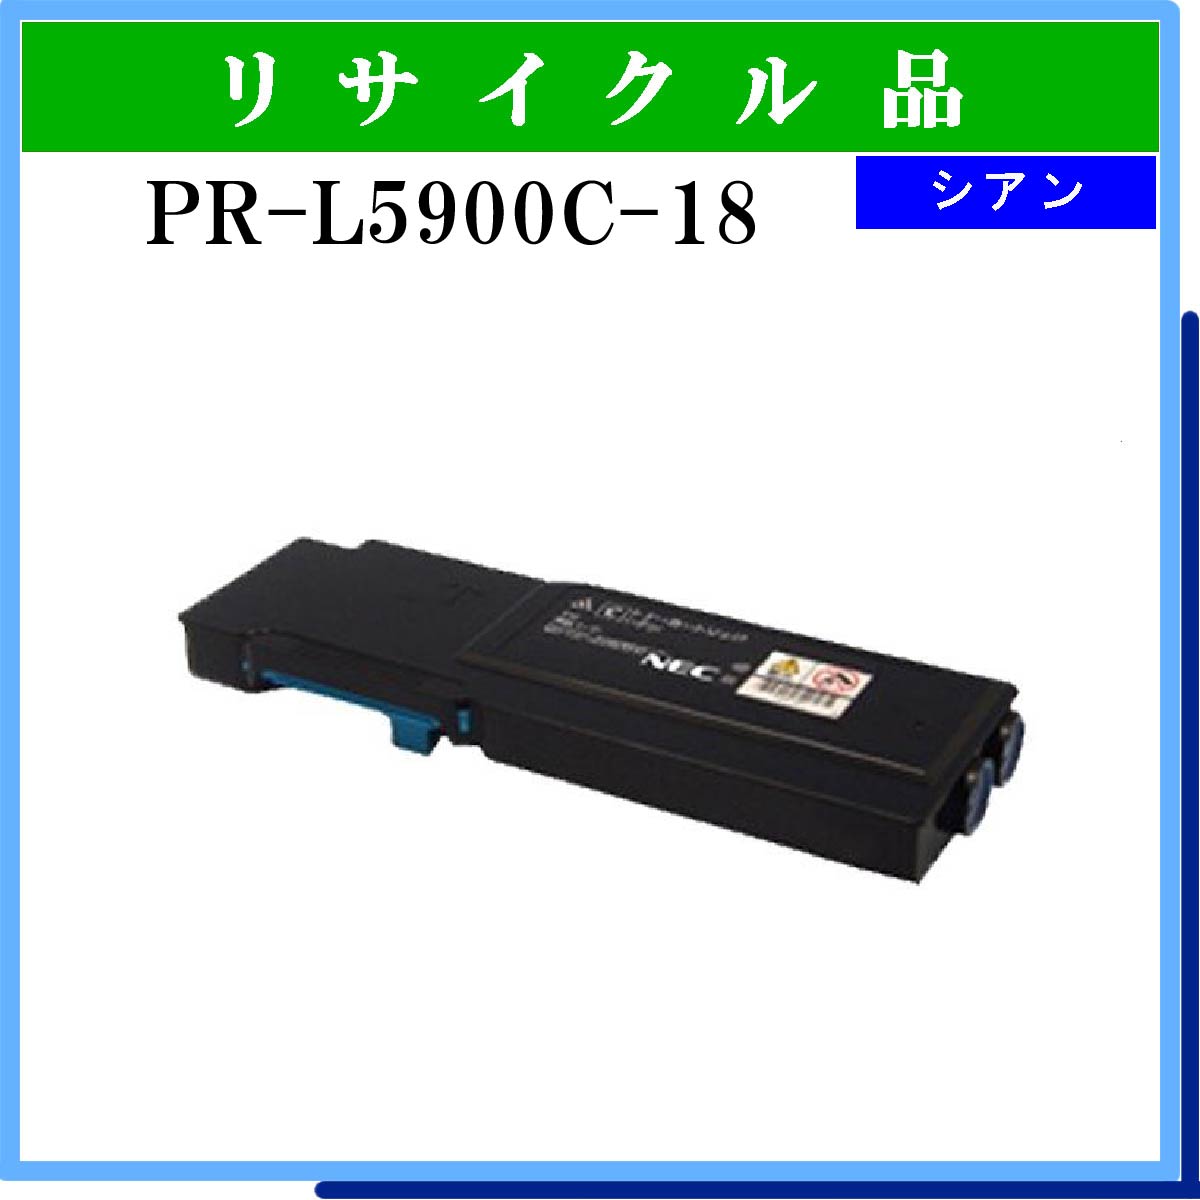 PR-L5900C-18